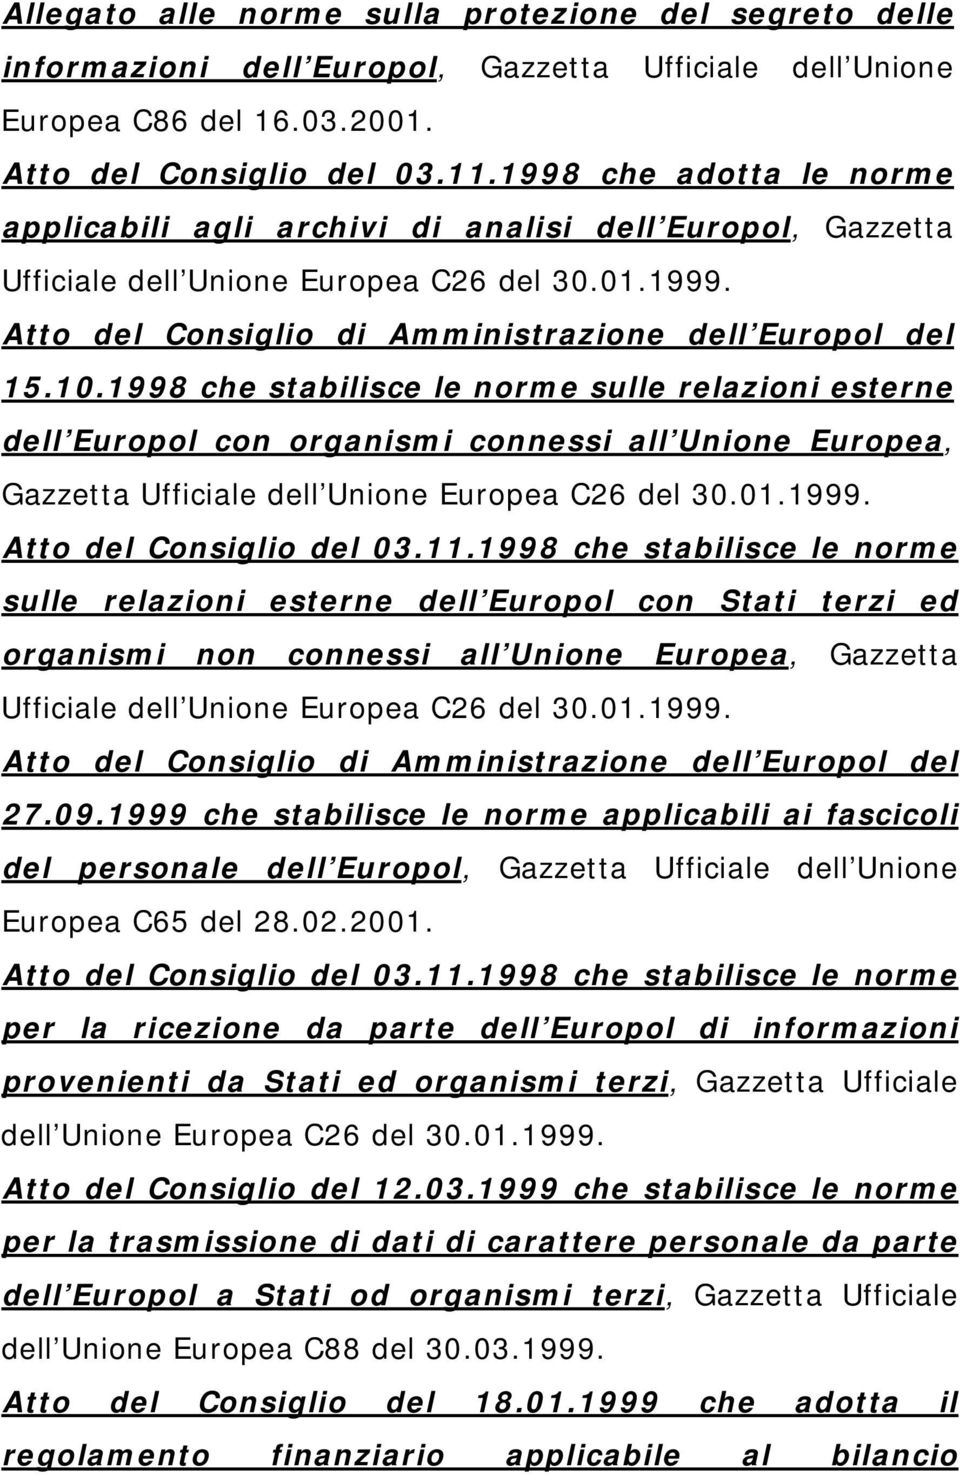 1998 che stabilisce le norme sulle relazioni esterne dell Europol con organismi connessi all Unione Europea, Gazzetta Ufficiale dell Unione Europea C26 del 30.01.1999. Atto del Consiglio del 03.11.